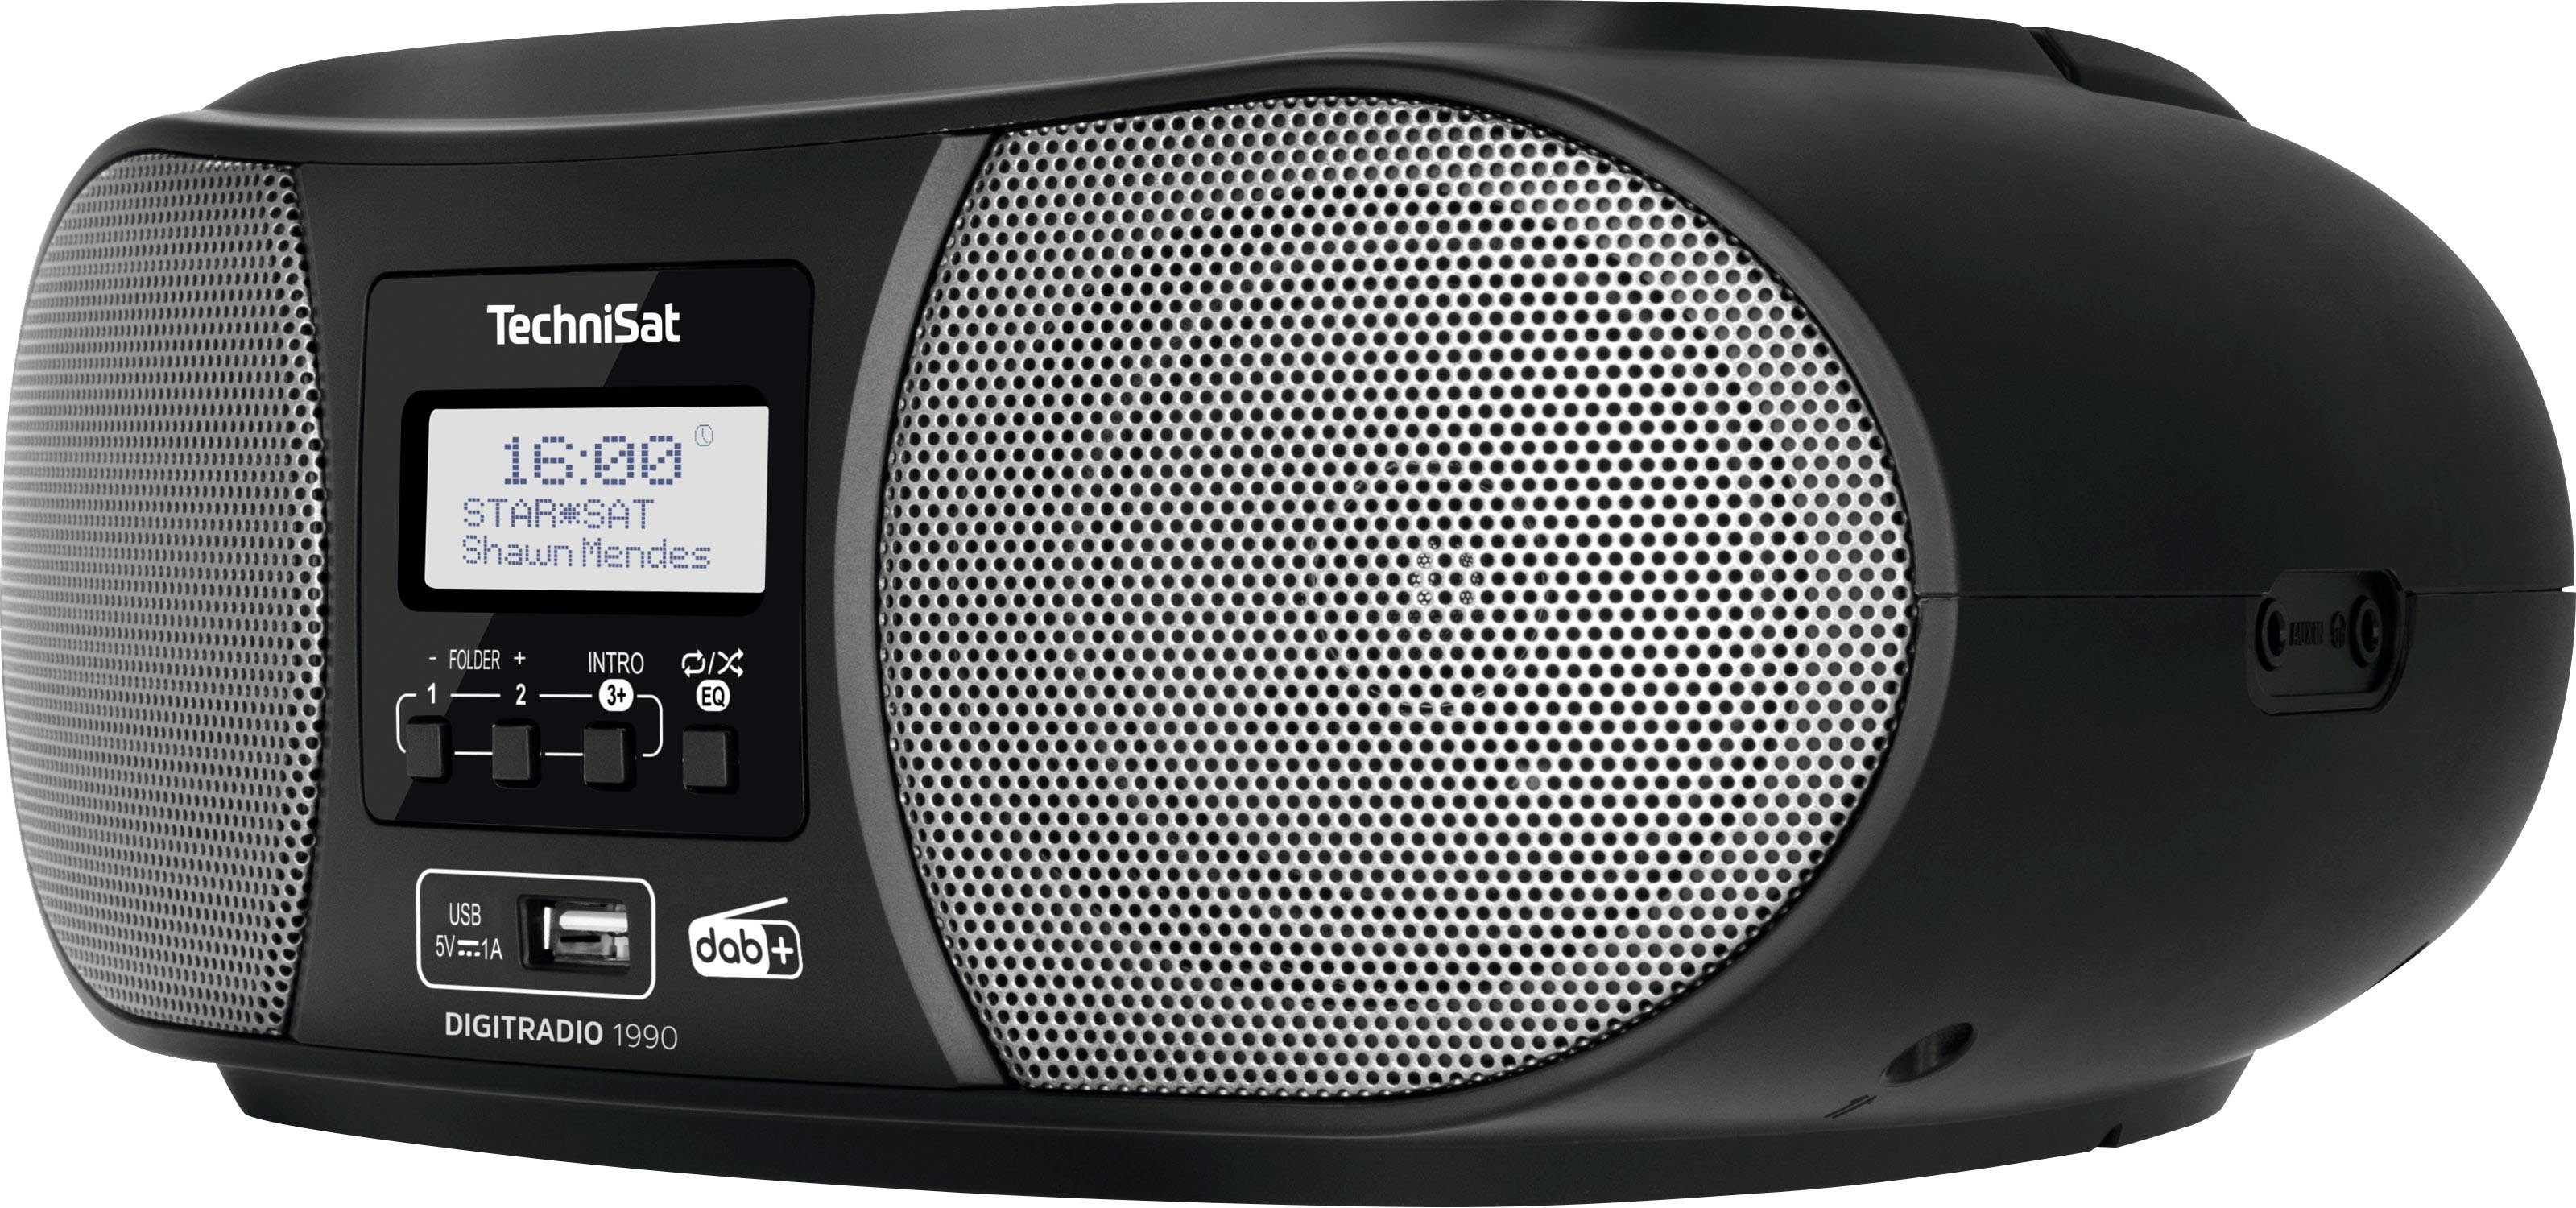 TechniSat Digitradio 1990 Stereo- Boombox (Digitalradio Bluetooth, DAB+, UKW, schwarz Batteriebetrieb (DAB), CD-Player, USB, FM-Tuner, möglich) mit